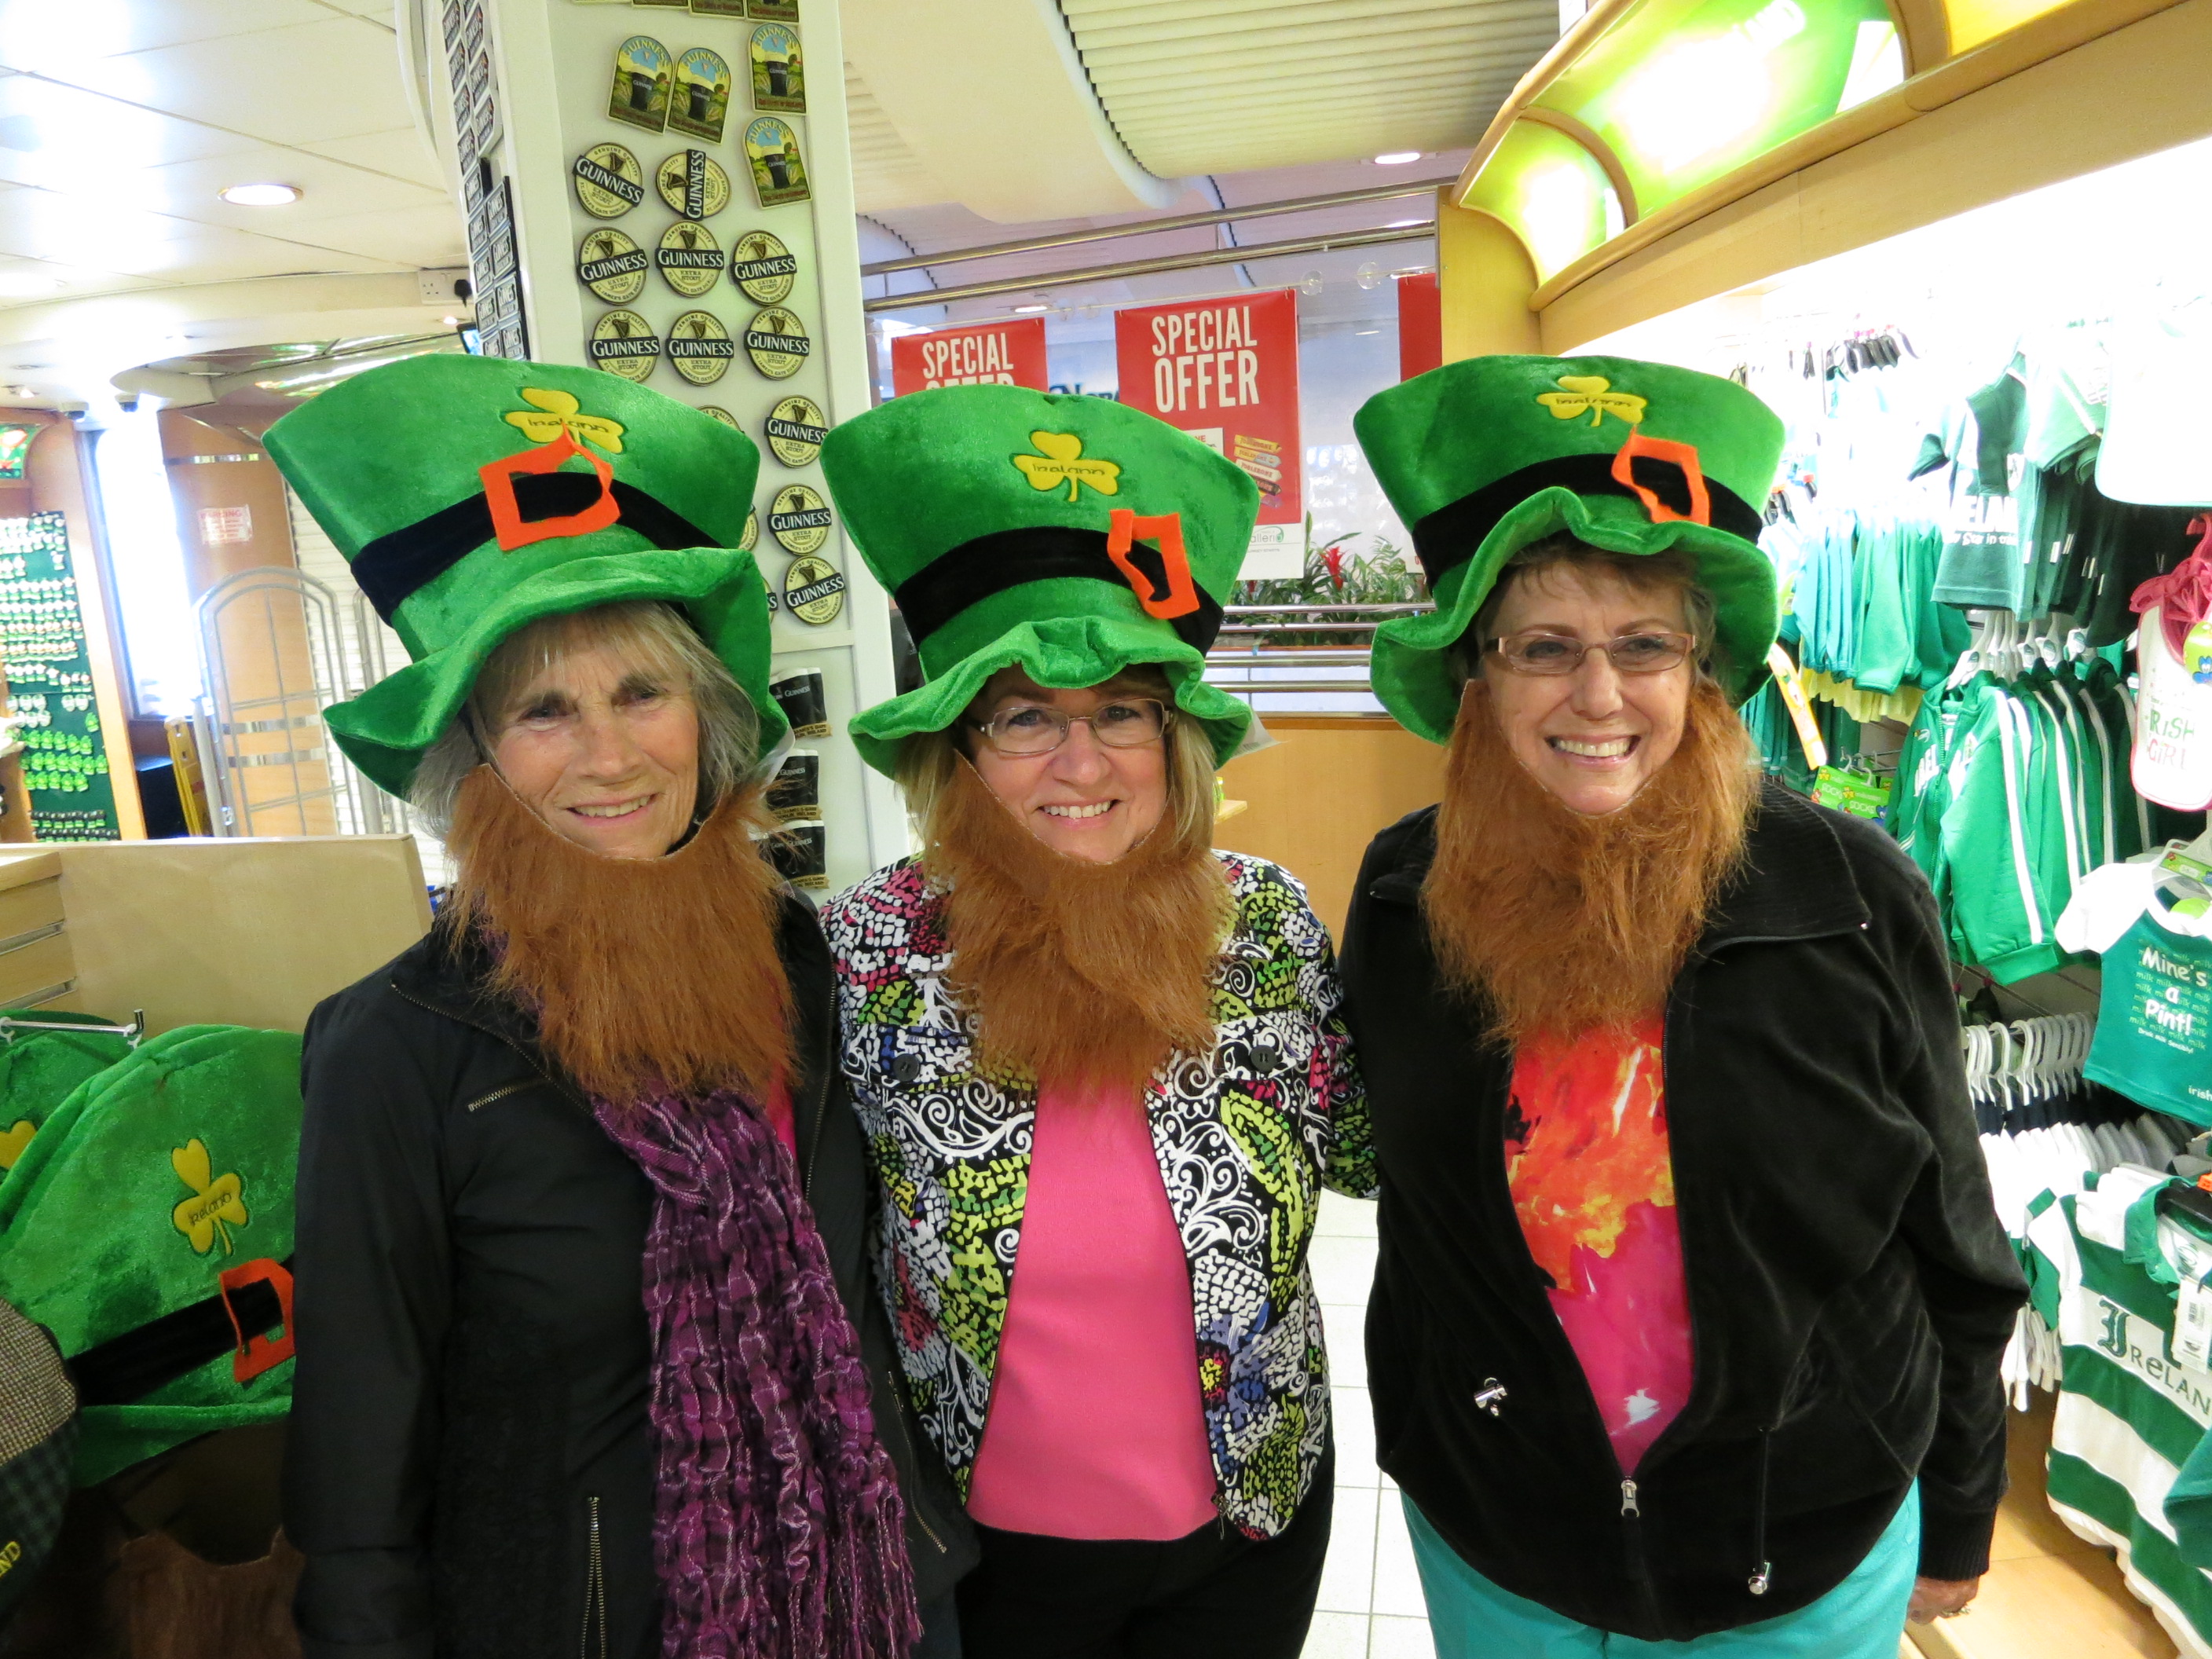 Our Irish Girls